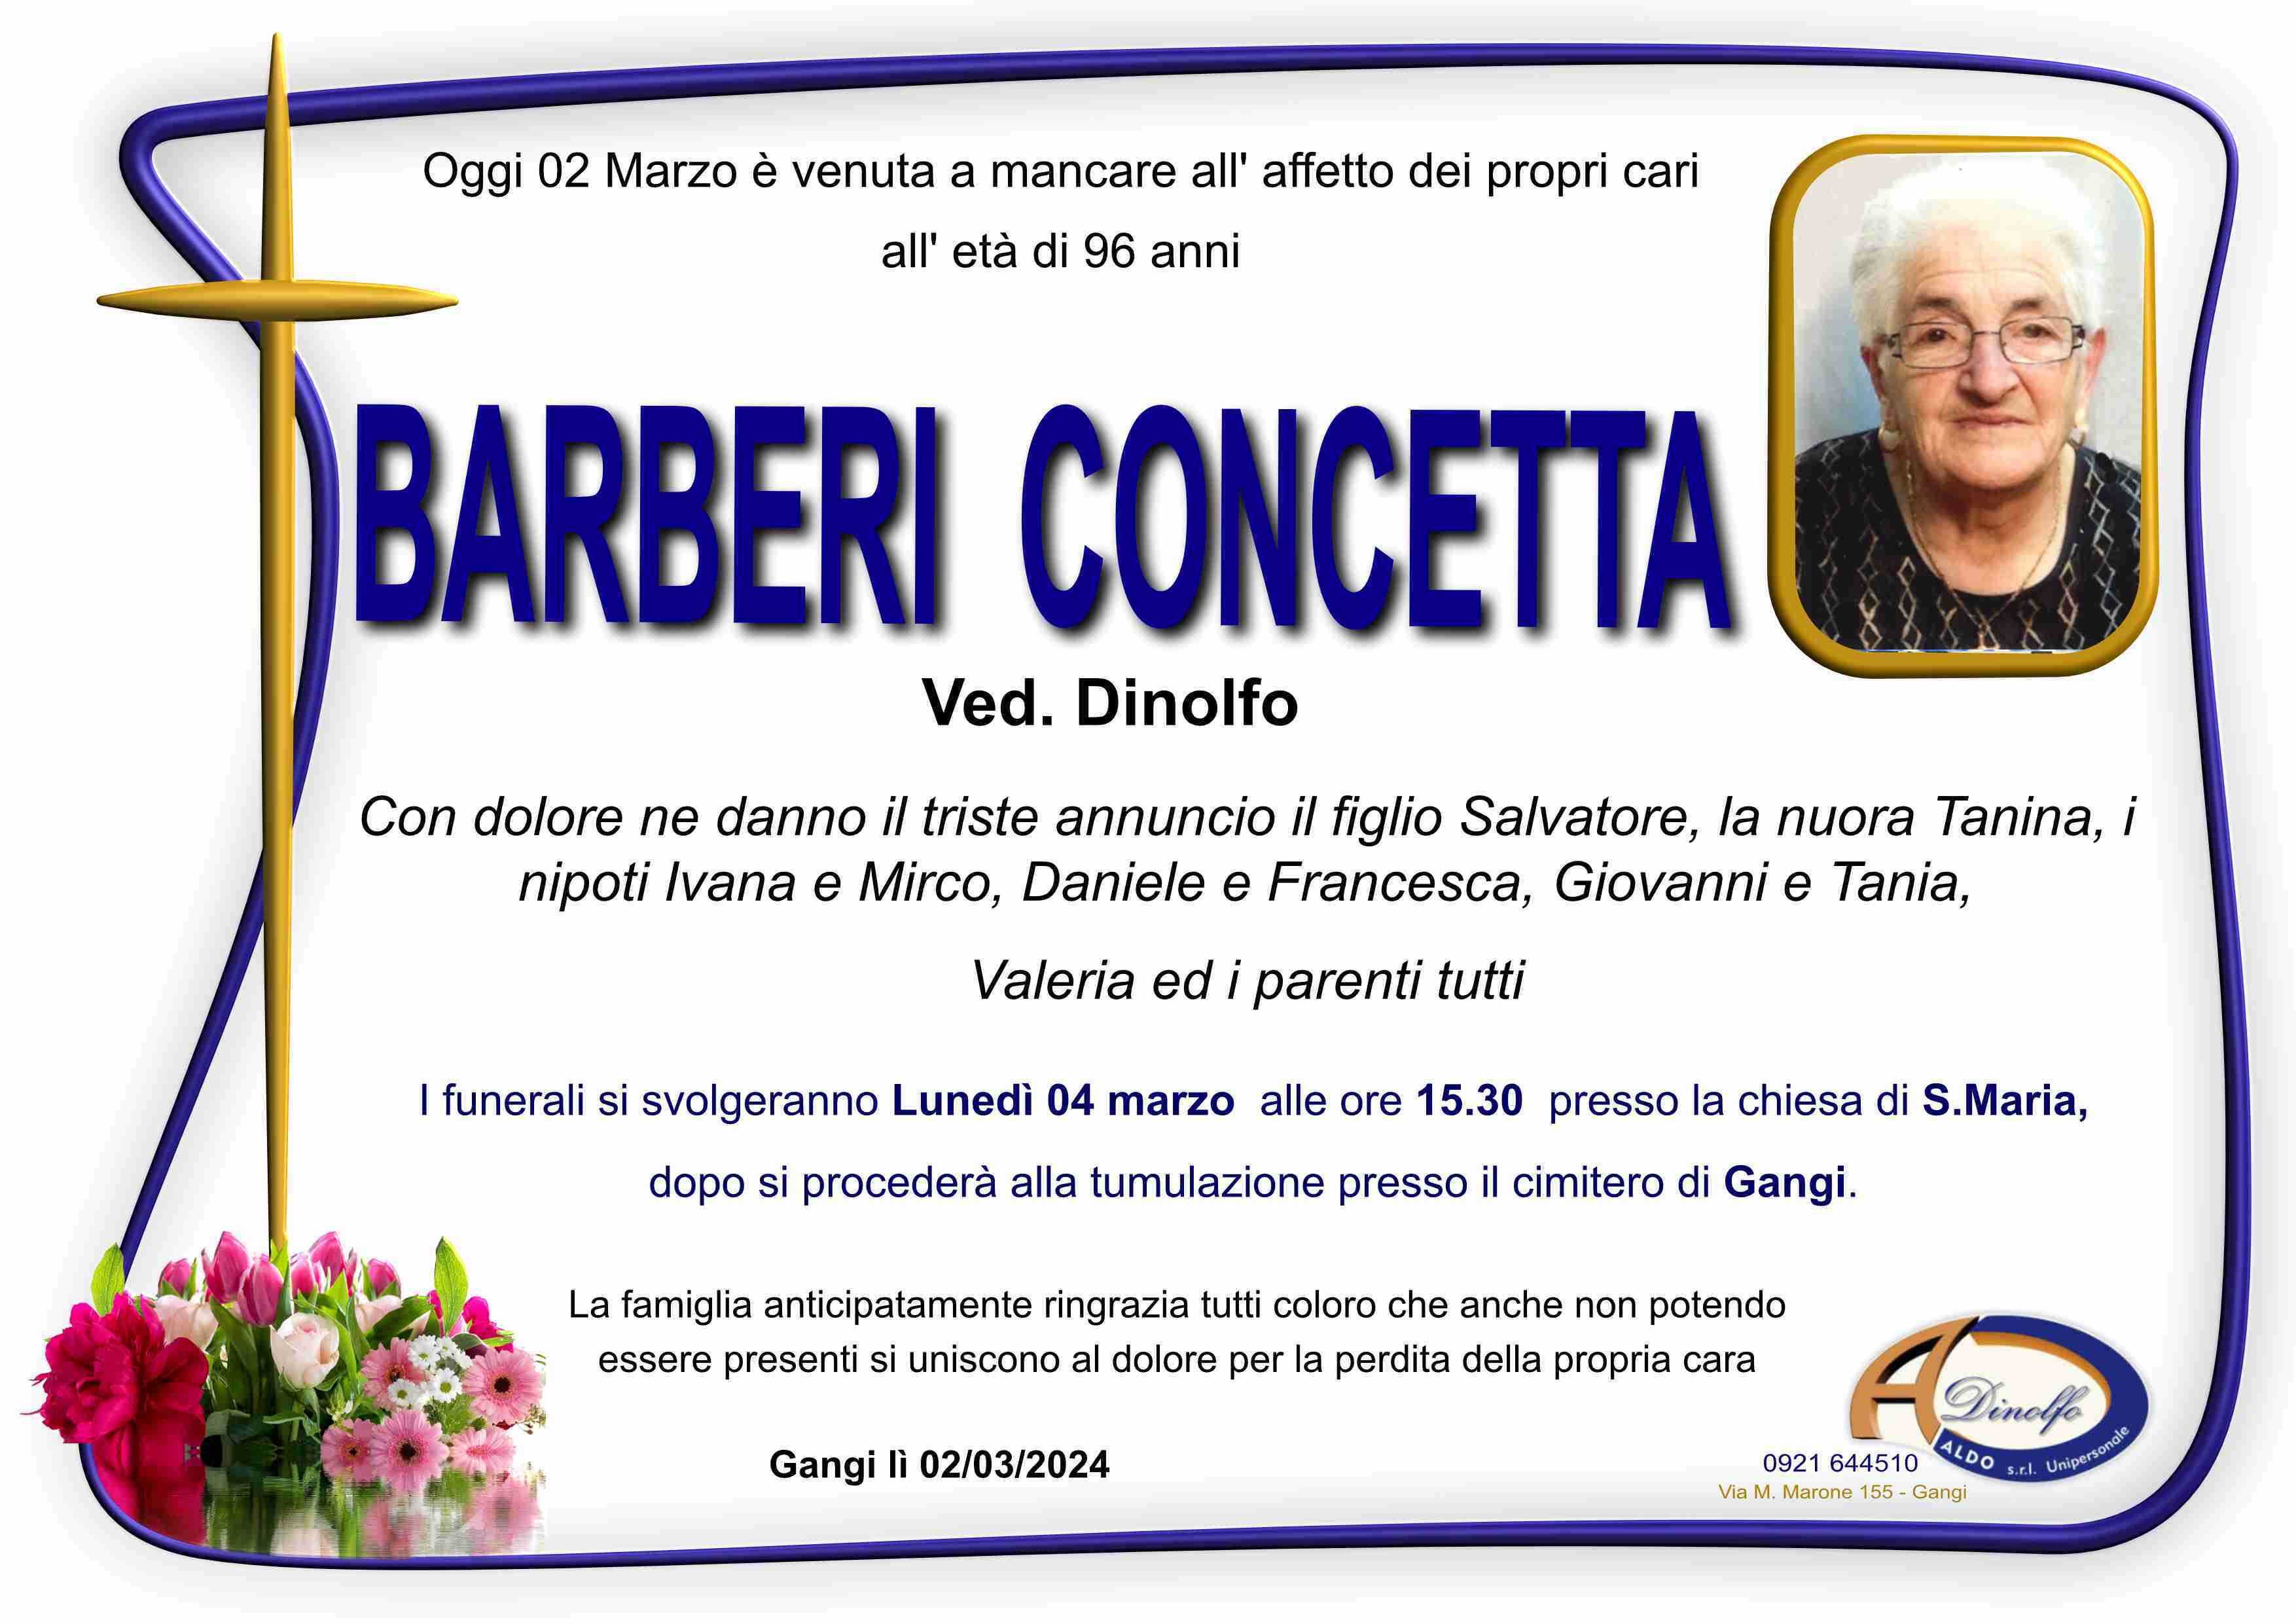 Concetta Barberi